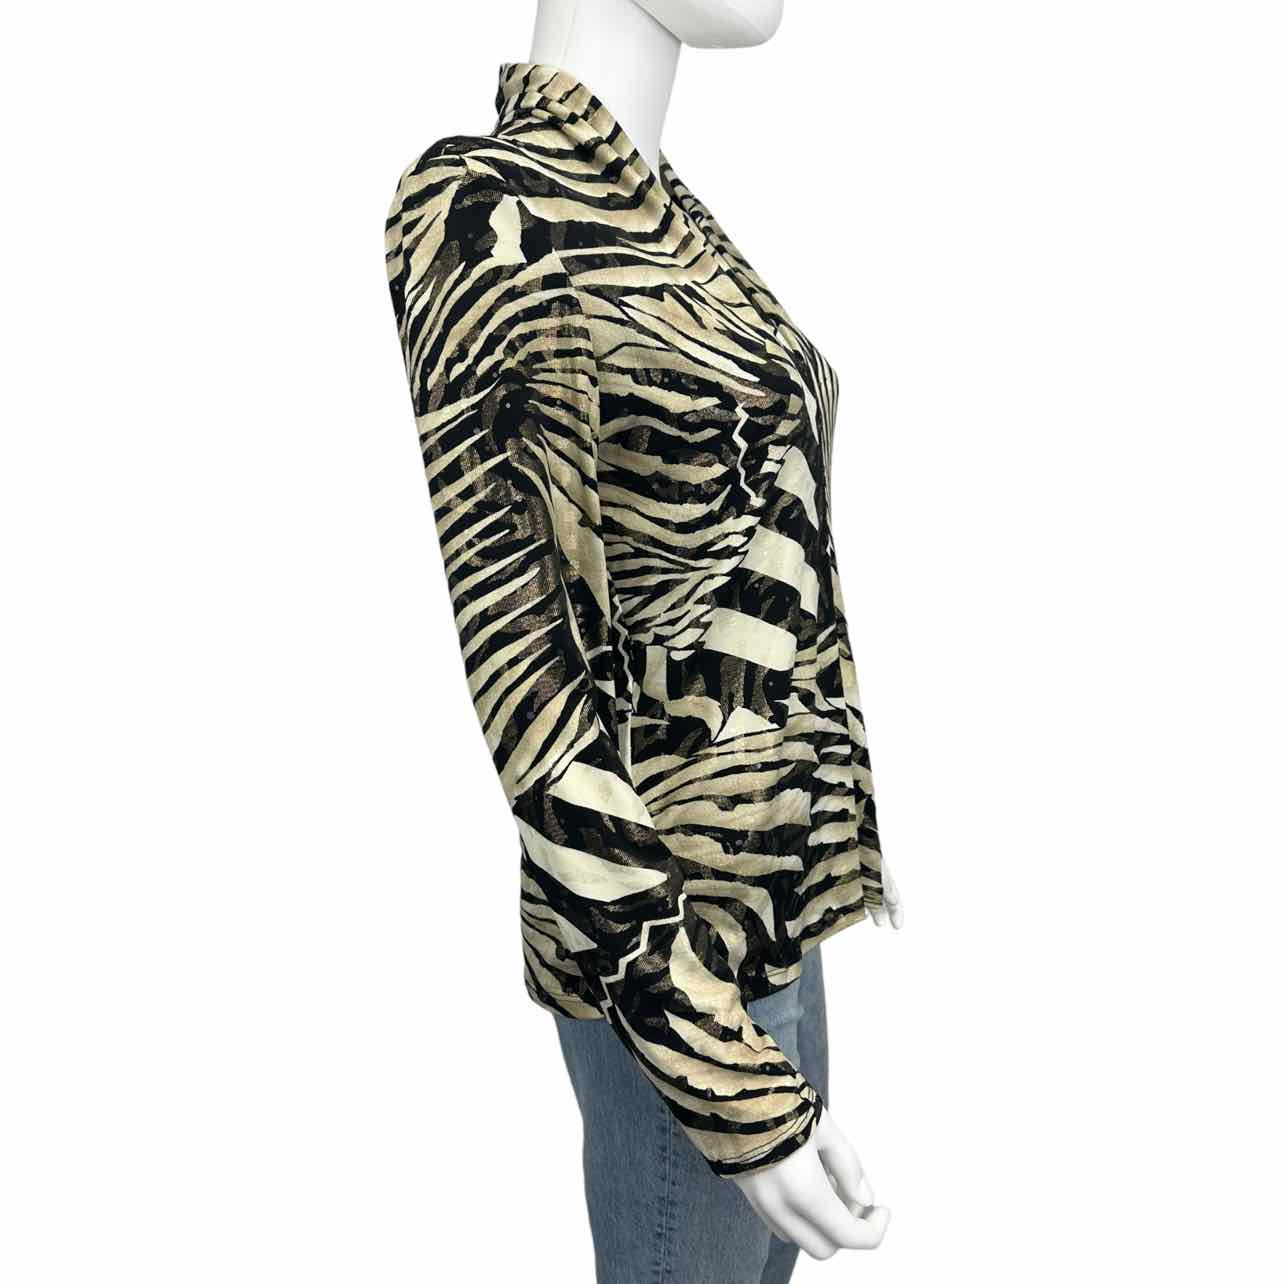 Joseph Ribkoff Zebra Print Blouse Size 12